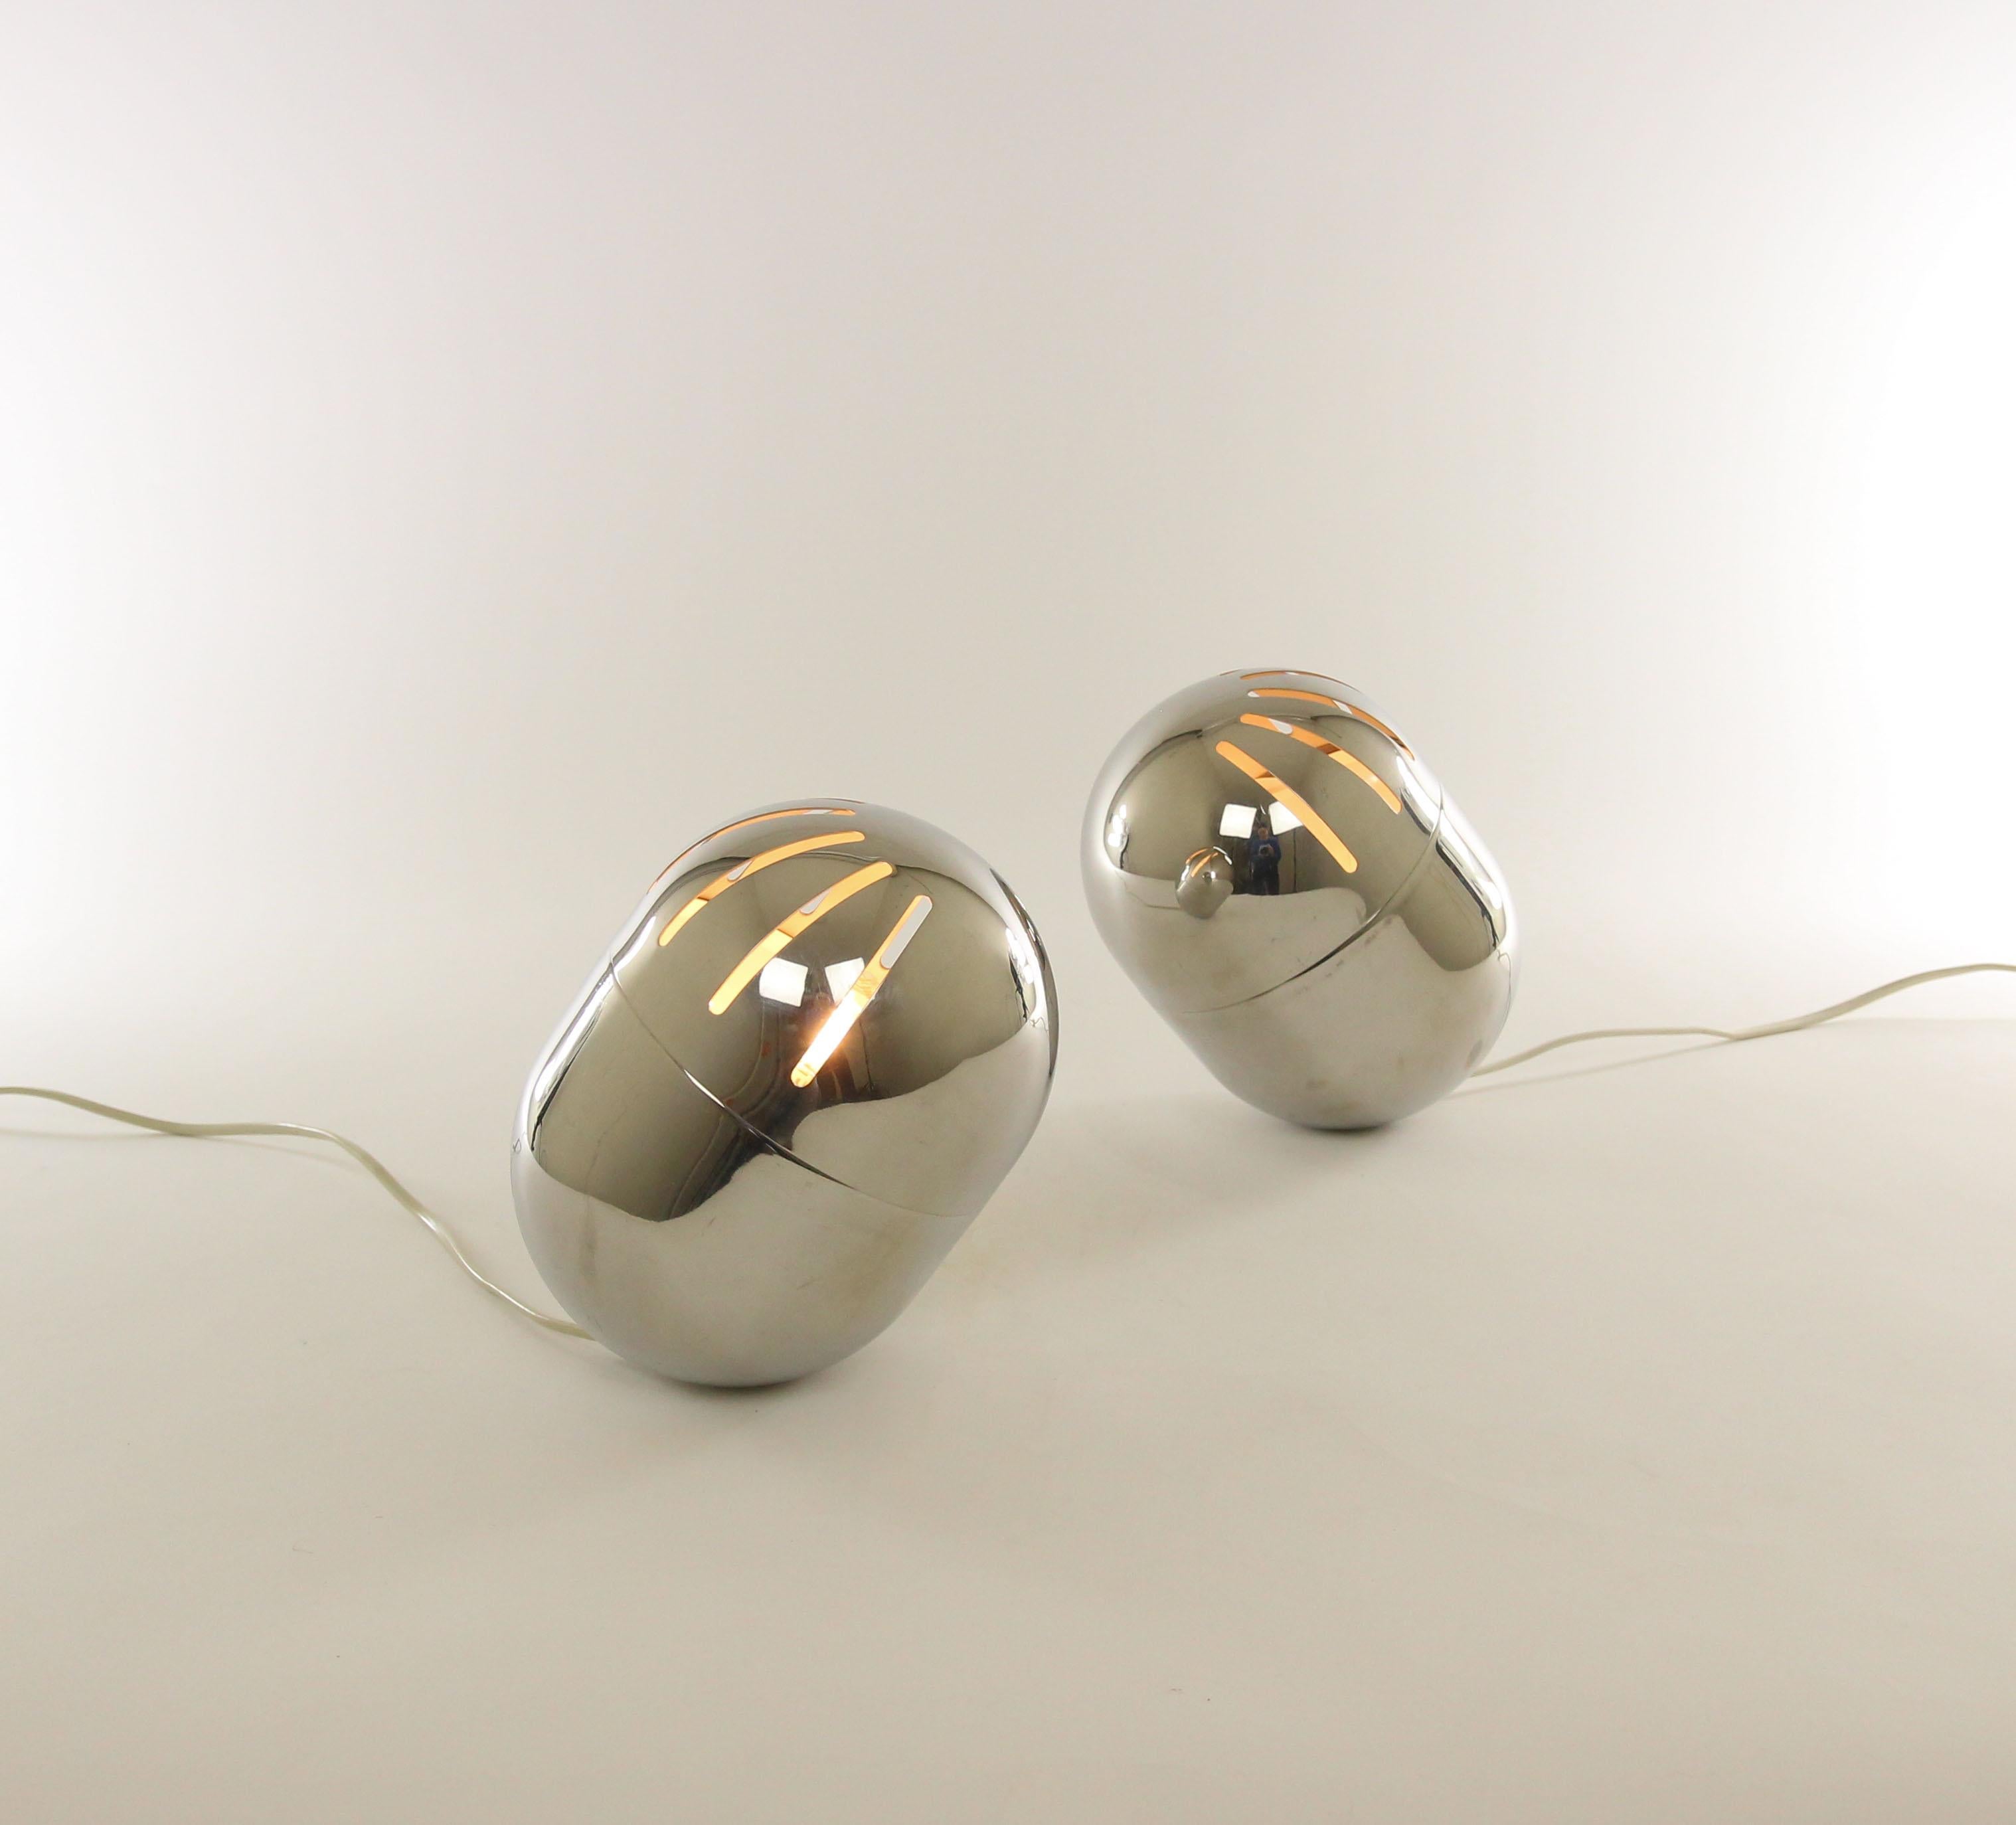 Paire de lampes de table chromées produites par Reggiani, probablement des années 1970.

La partie supérieure de la lampe, qui est rotative, contient huit ouvertures allongées à travers lesquelles la lumière émane de manière ludique. Le fond de la